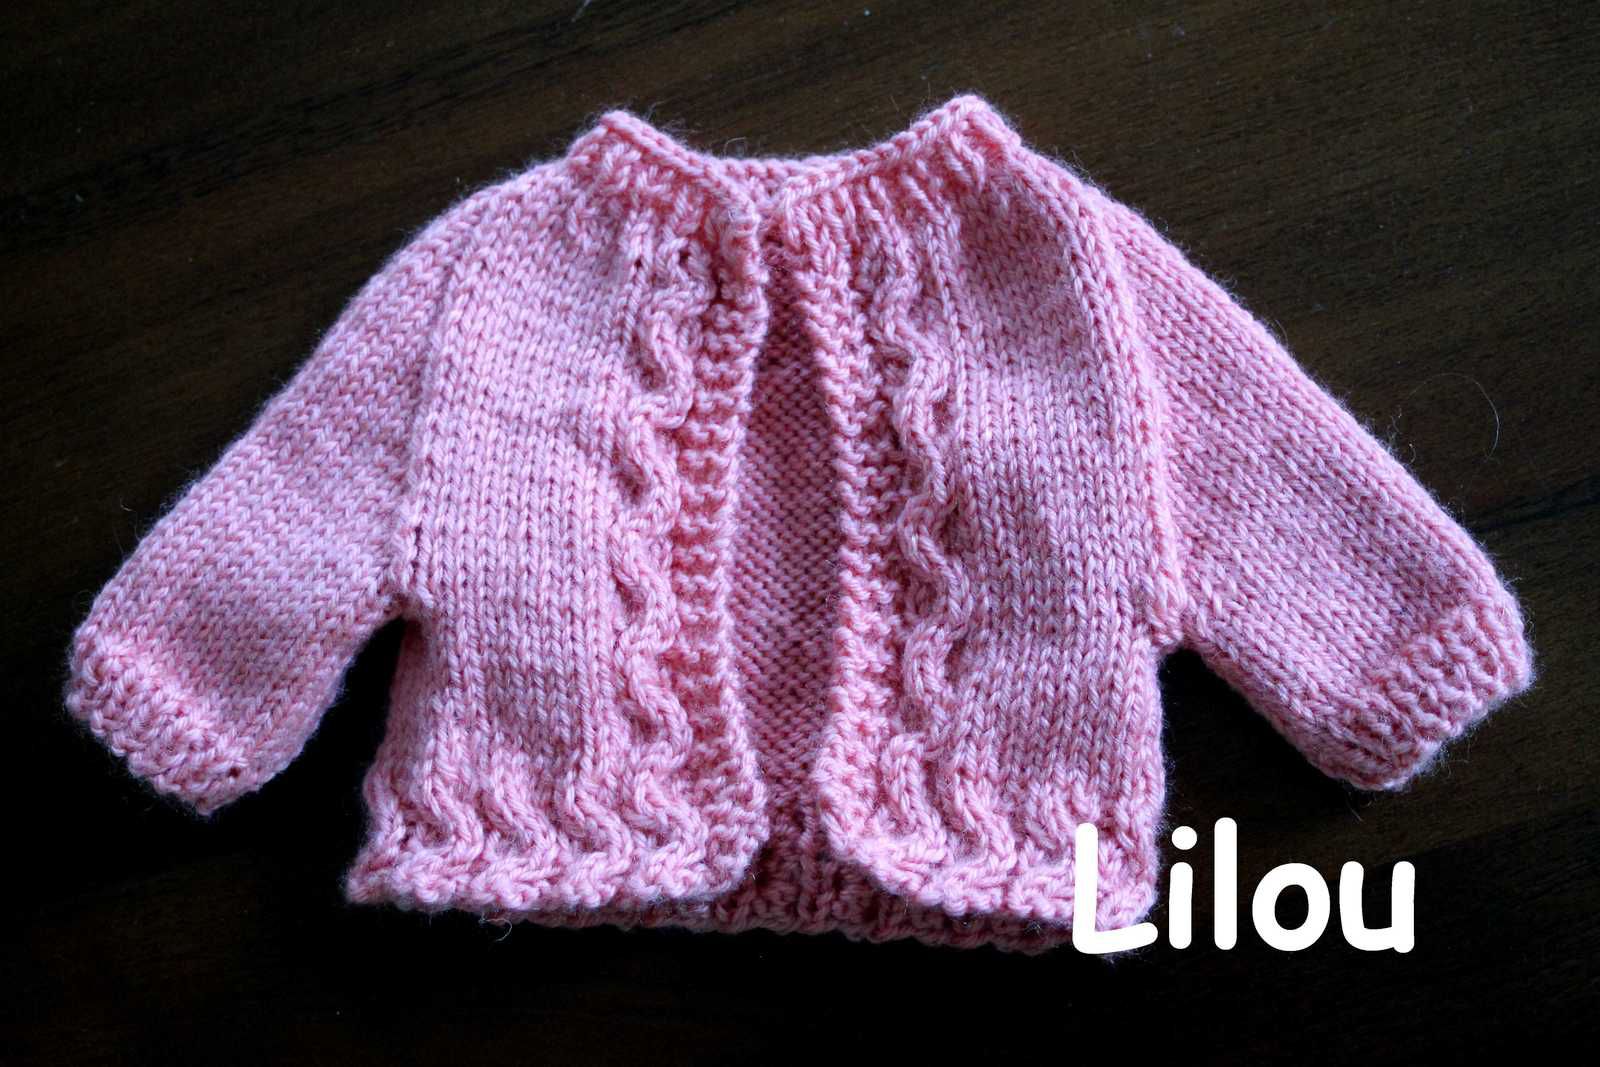 Ensemble au tricot pour poupon DIY modèle Tuto gratuit - Fils de Lilou -  tricot, crochet, dentelle, couture, broderie, tuto modele gratuit